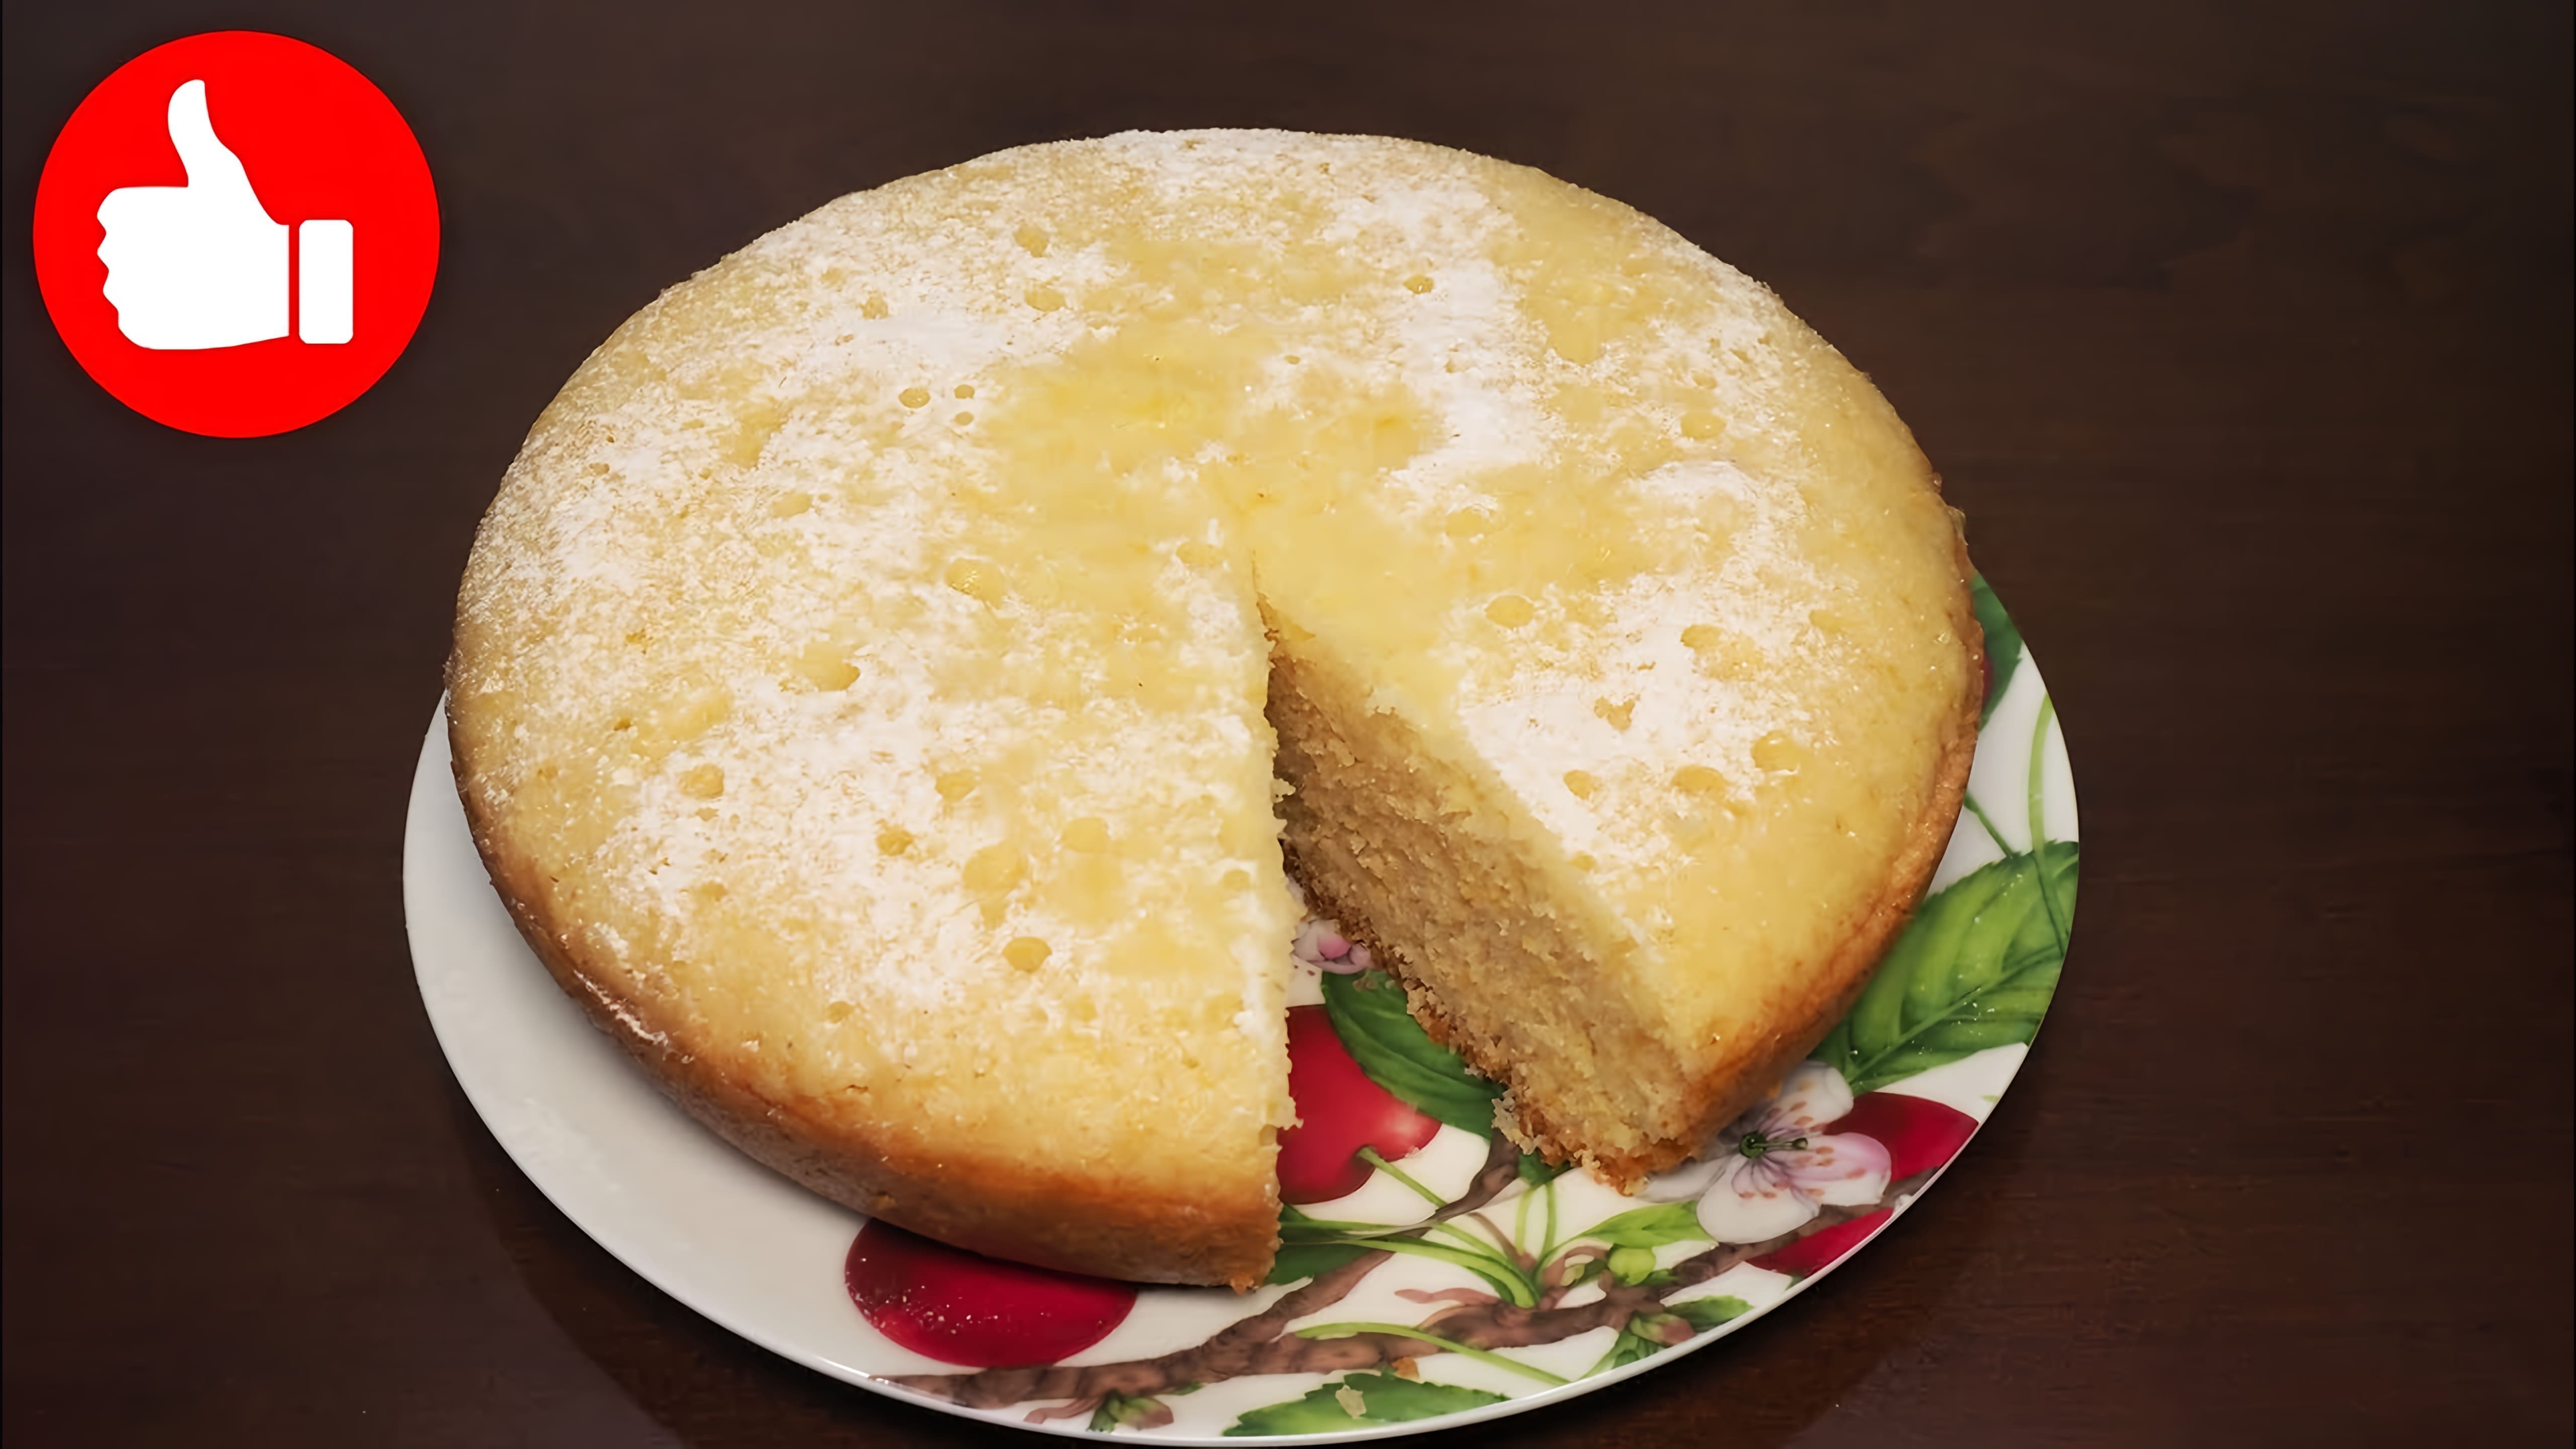 В этом видео демонстрируется рецепт приготовления лимонного кекса в мультиварке